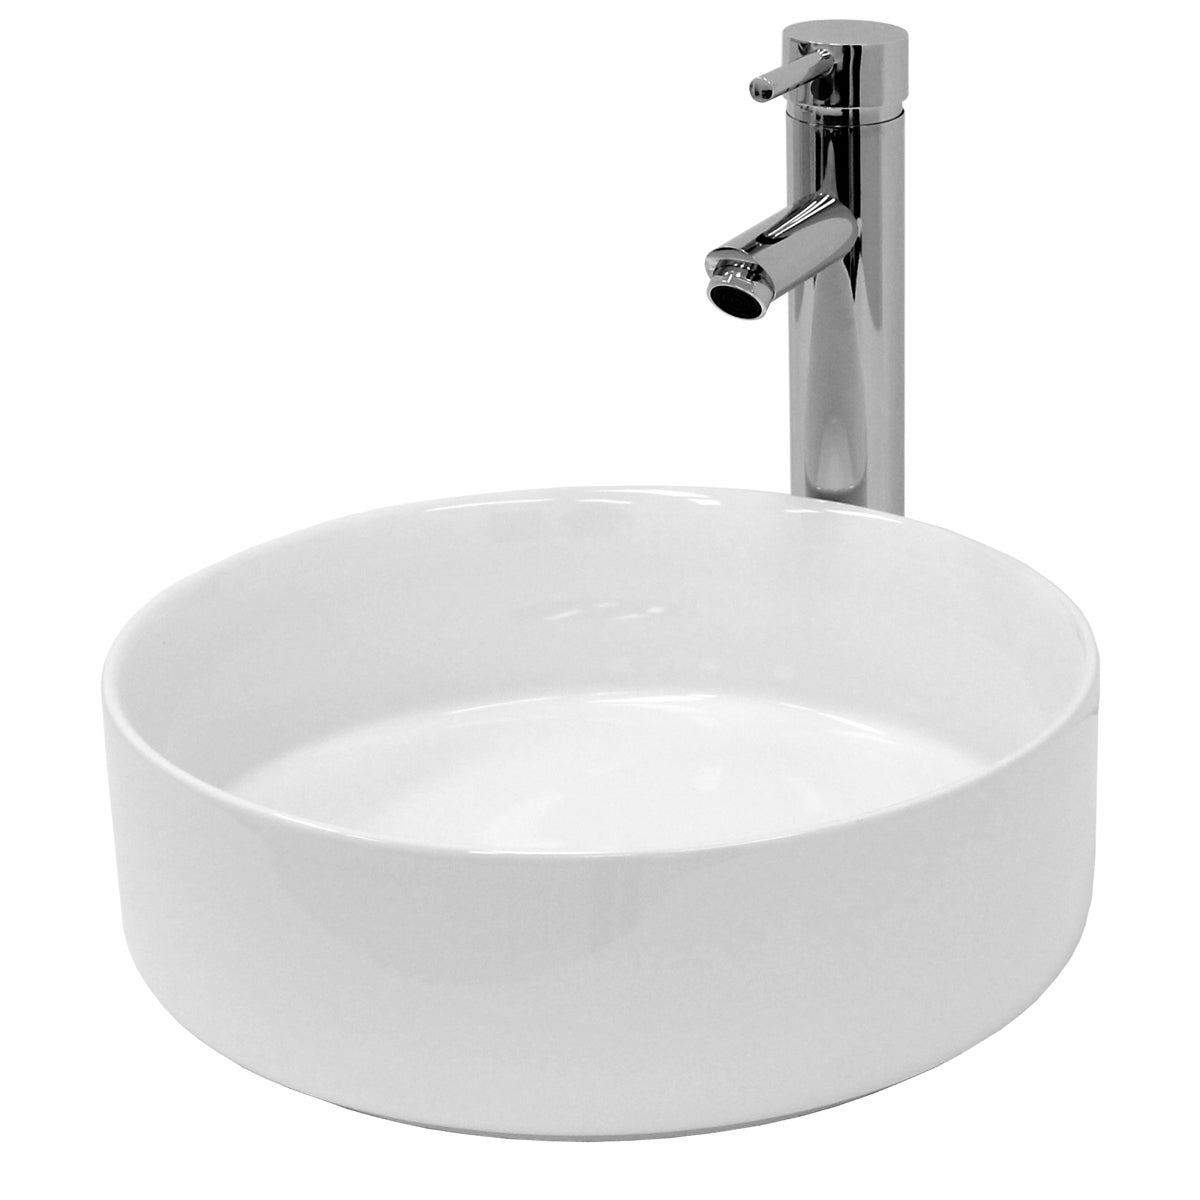 ECD Germany Design Waschbecken Waschtisch Ø 355 x 120 mm aus Keramik Rund Weiß - Aufsatzbecken Aufsatzwaschbecken Handwaschbecken Aufsatzwaschtisch Spülbecken Wasserfall Waschschale Waschschlüssel